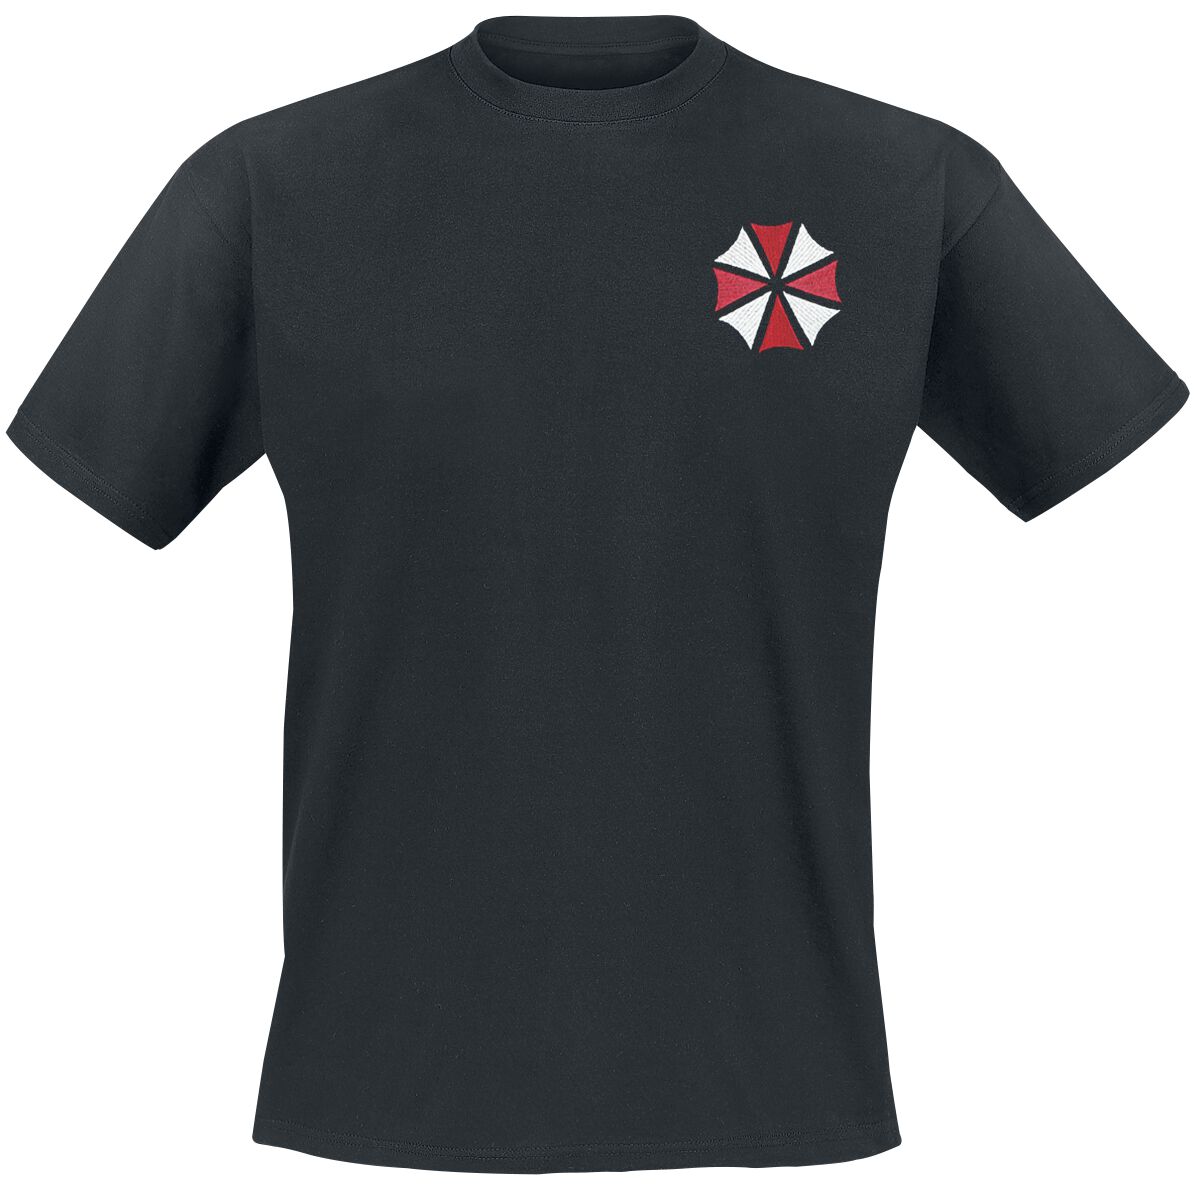 Resident Evil - Gaming T-Shirt - Umbrella Co. - Our Business Is Life Itself - L bis XXL - für Männer - Größe L - schwarz